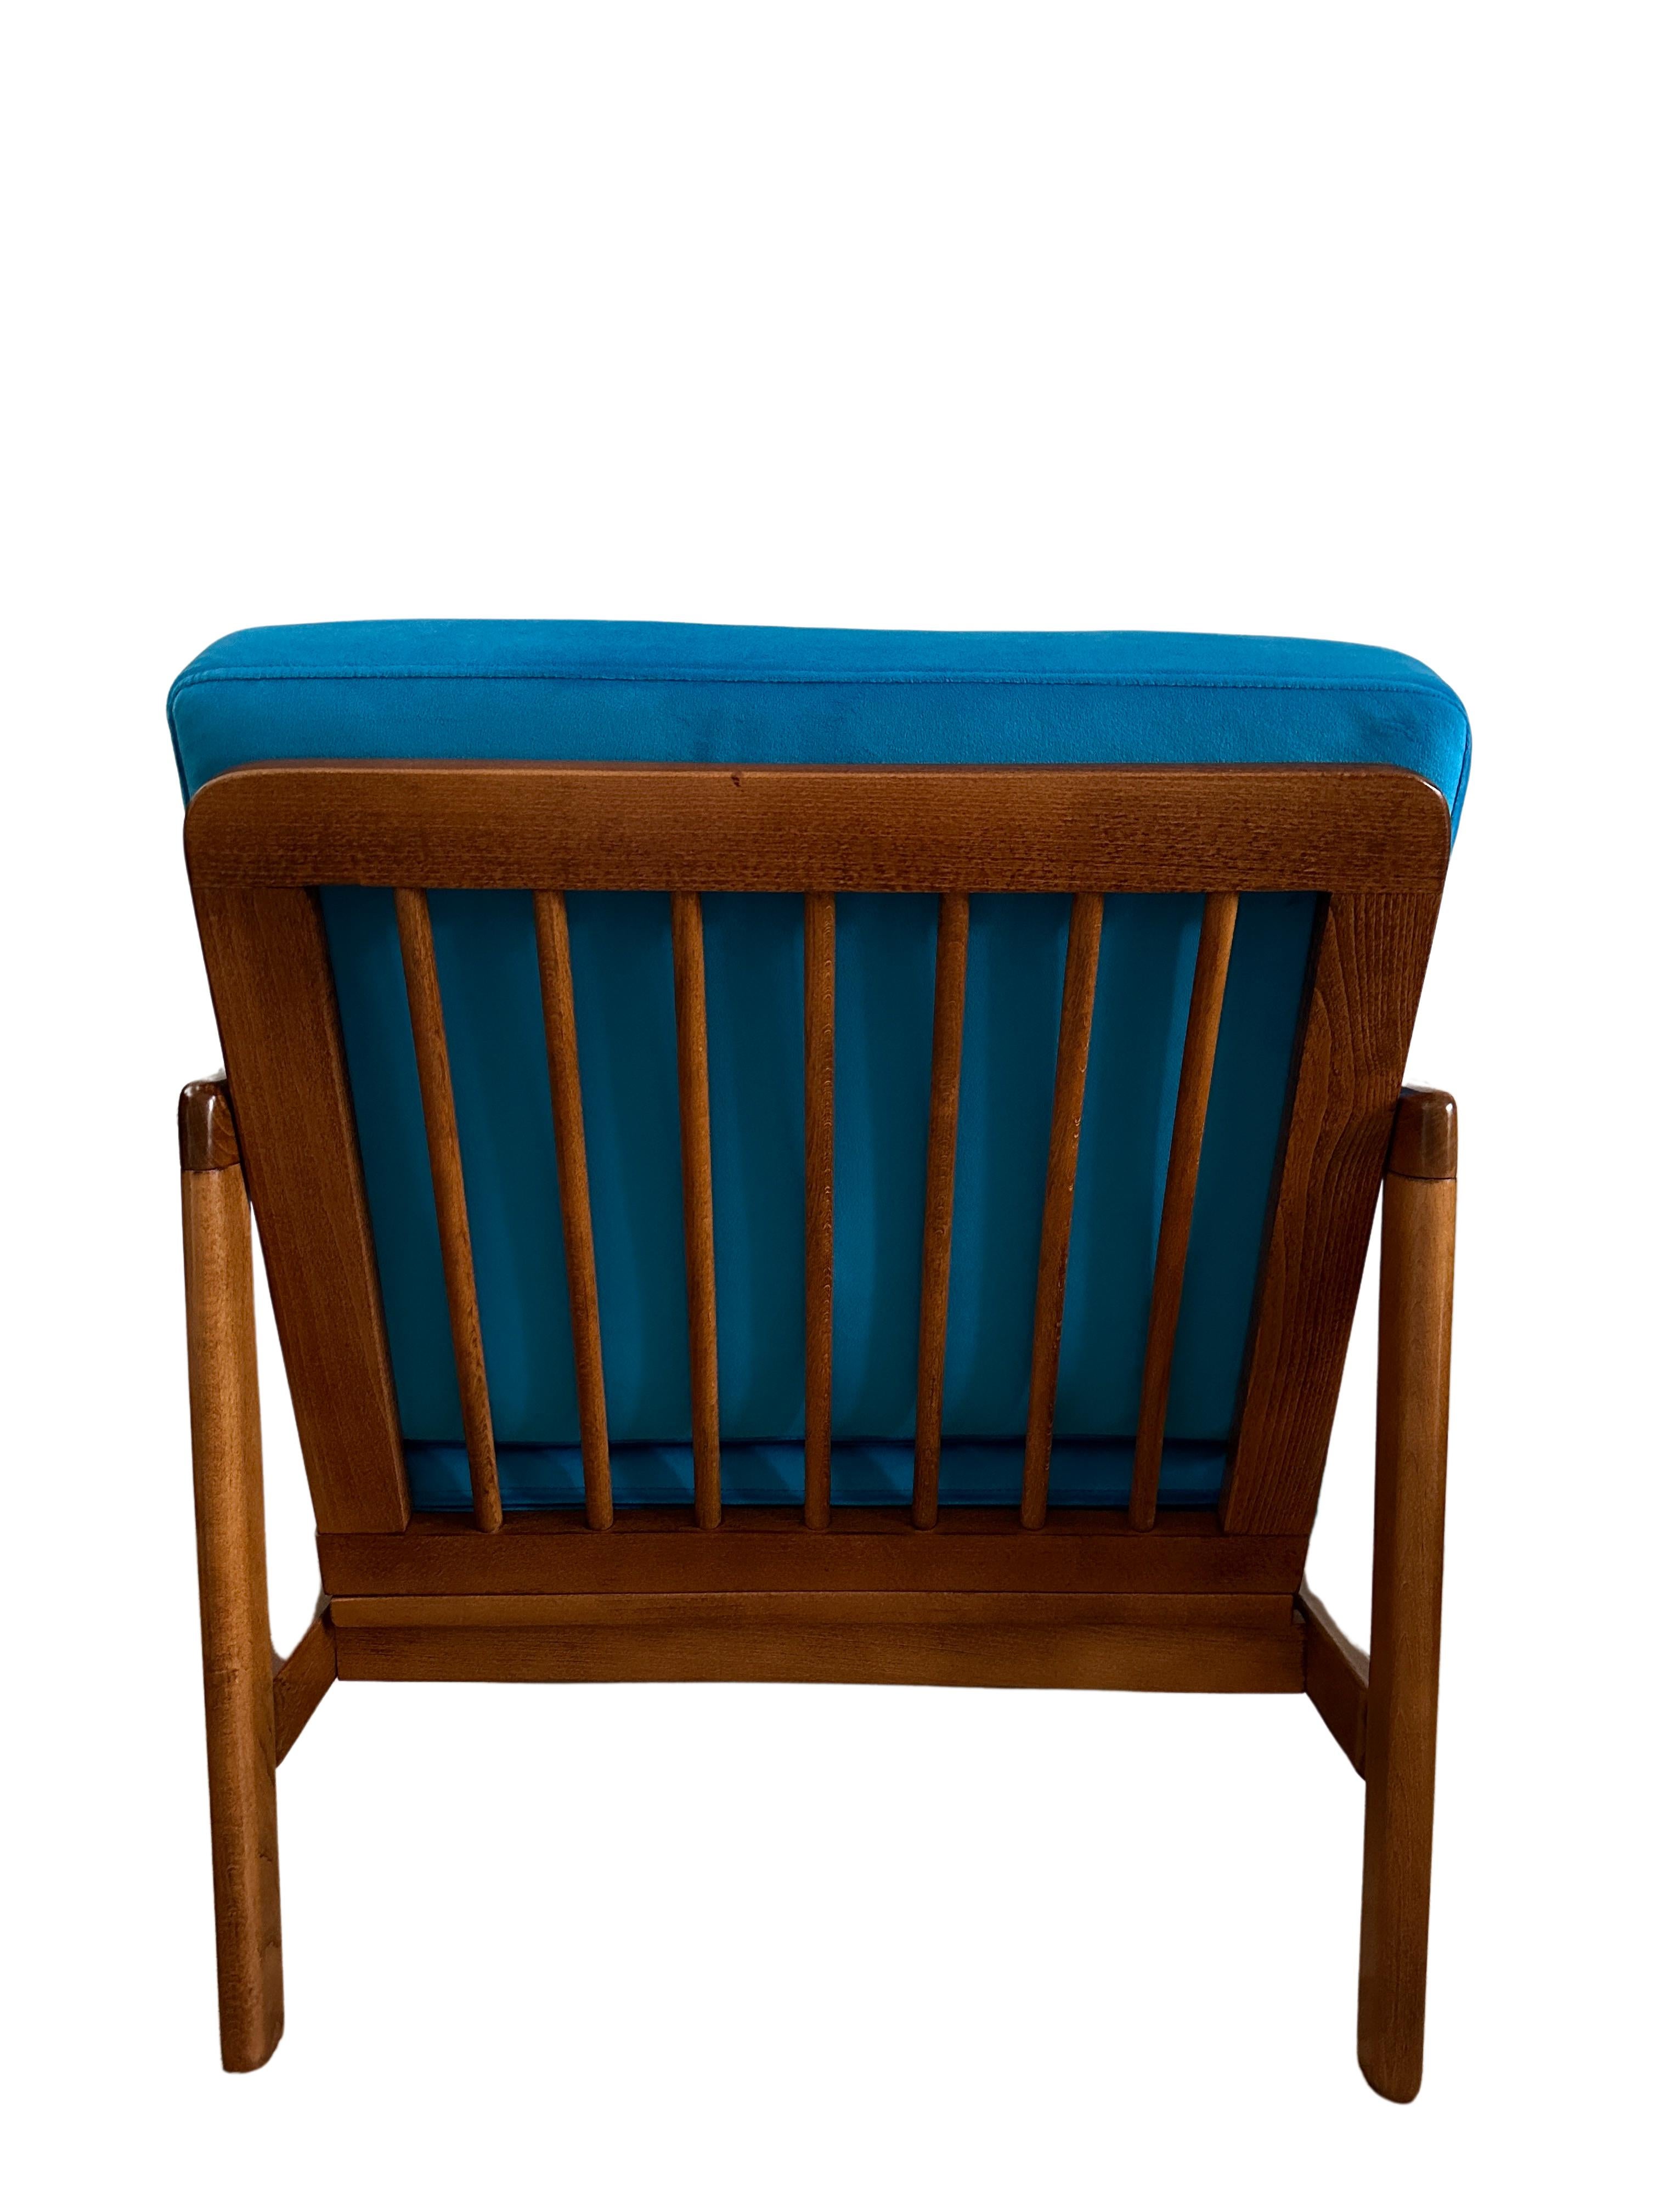 Das Set aus zwei sehr bequemen Sesseln, Modell B-7752, entworfen von Zenon Baczyk, wurde in den 1960er Jahren von Swarzedzkie Fabryki Mebli in Polen hergestellt. 

Die Struktur besteht aus Buchenholz in tiefem Honigbraun, das mit einem seidenmatten